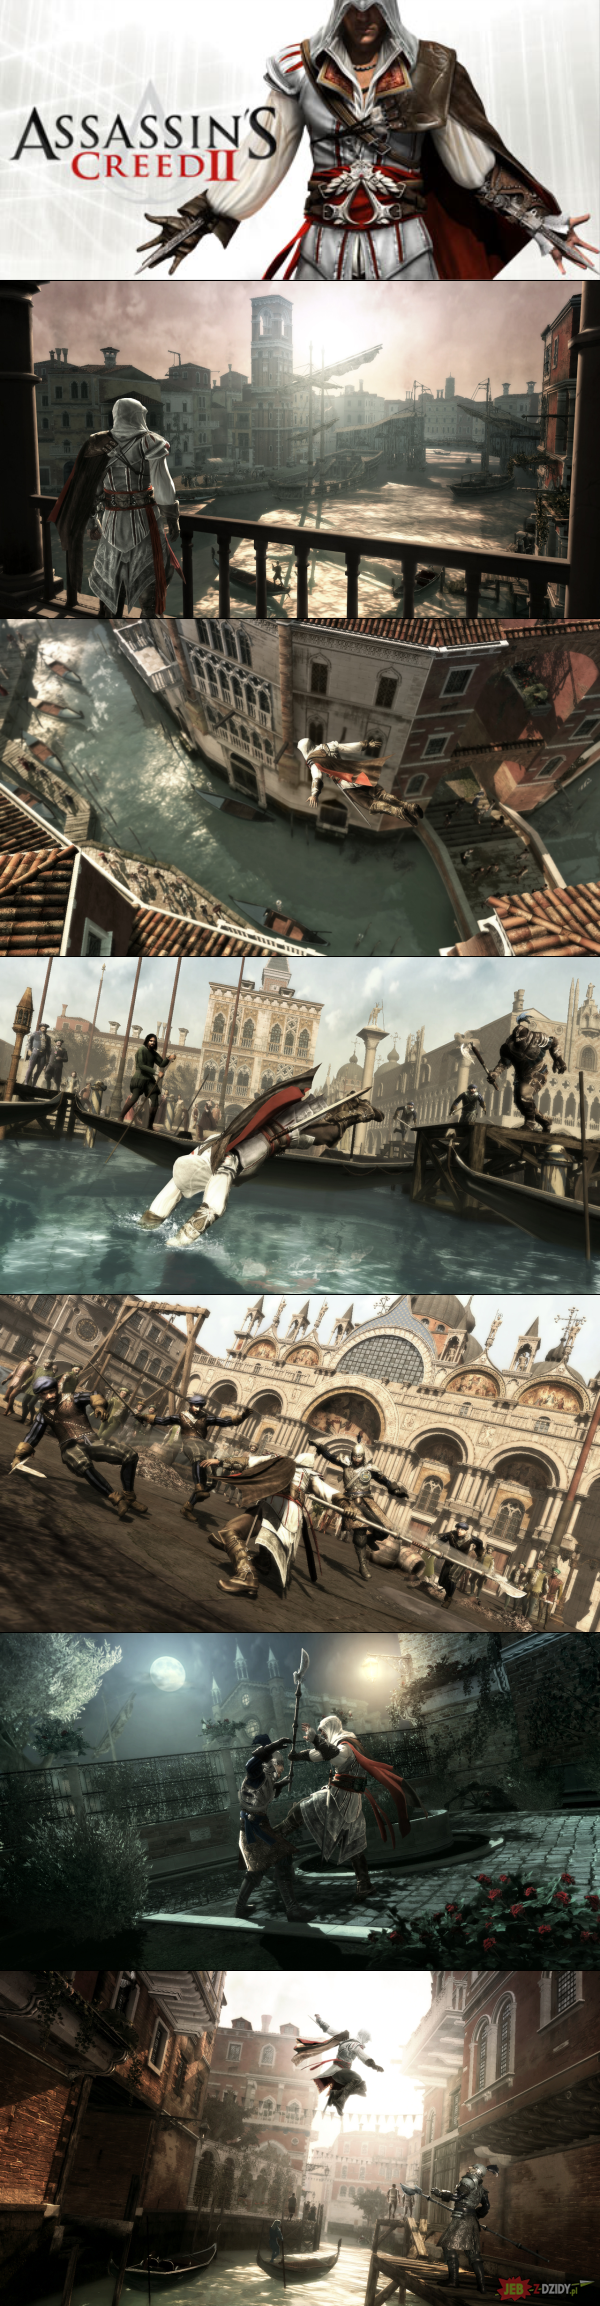 Assassin's Creed 2 za darmo na Uplay